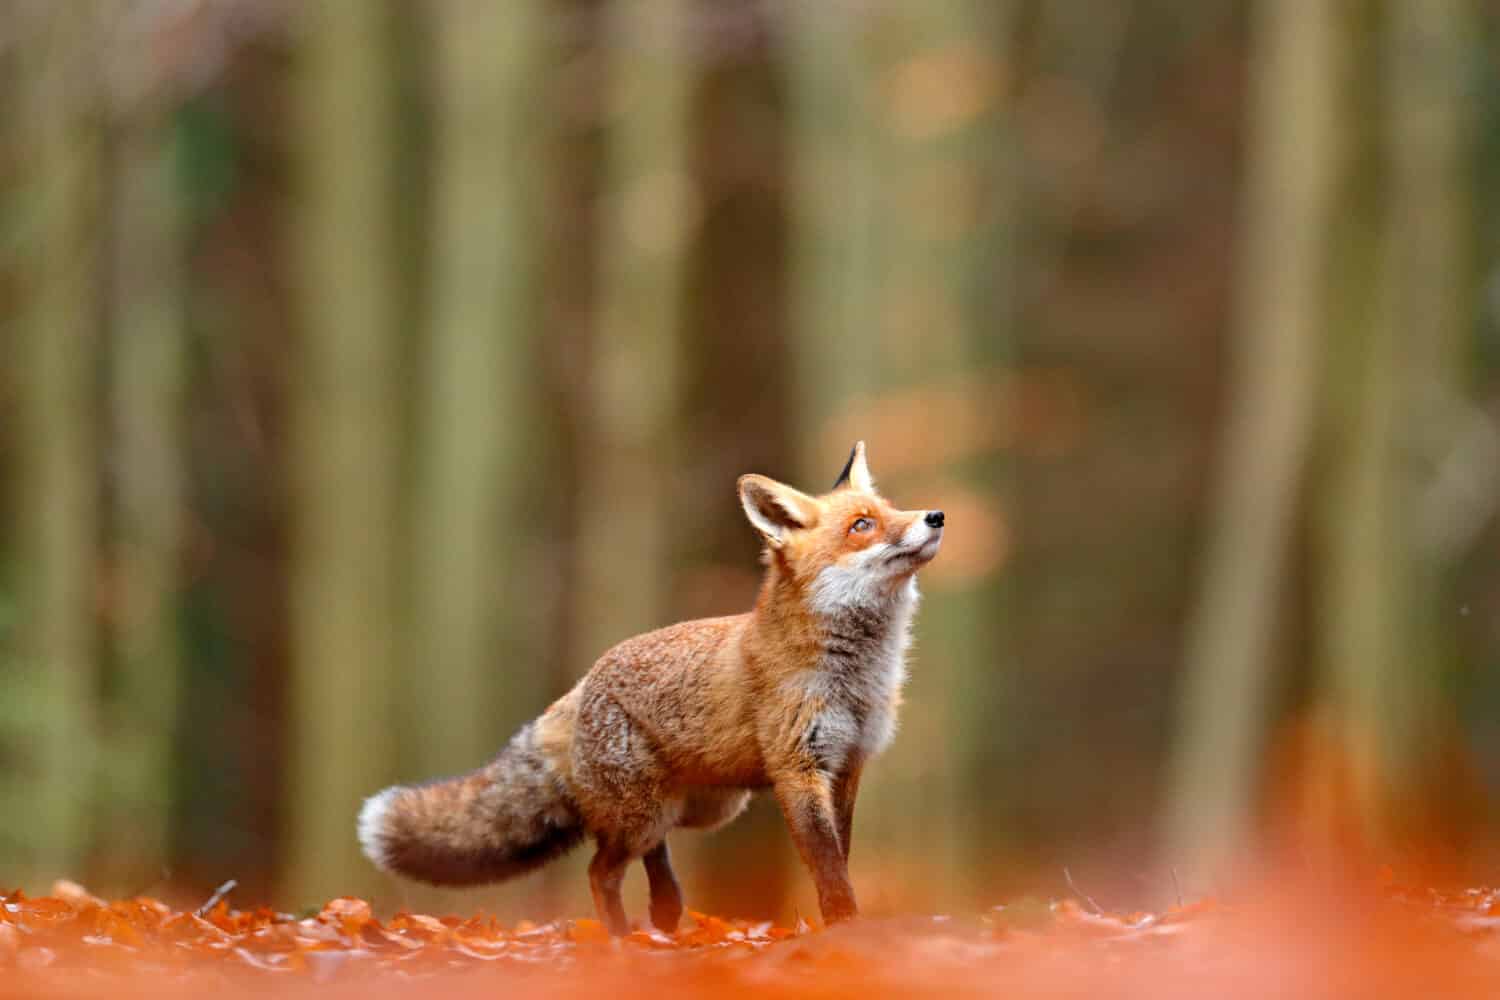 Carino Red Fox, Vulpes vulpes nella foresta di caduta.  Bellissimo animale nell'habitat naturale.  Scena della fauna selvatica dalla natura selvaggia.  Volpe rossa che corre in foglie autunnali arancioni. 